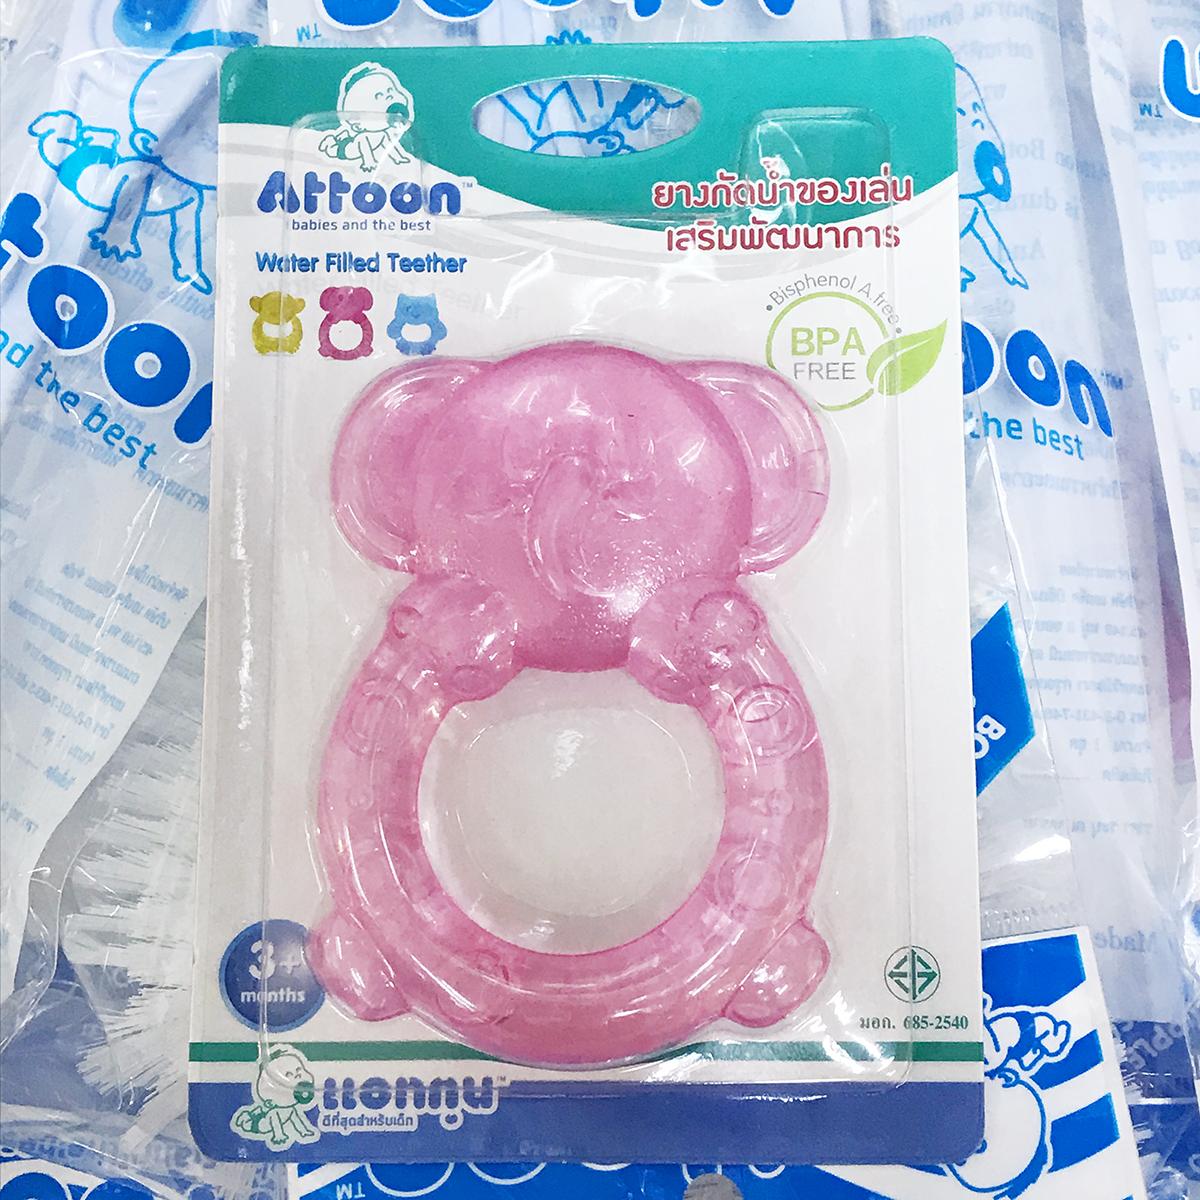 ยางกัดน้ำ ของเล่นเด็กอ่อน เสริมพัฒนาการ ATTOON Baby Teether FT06D  - 1 ชิ้น